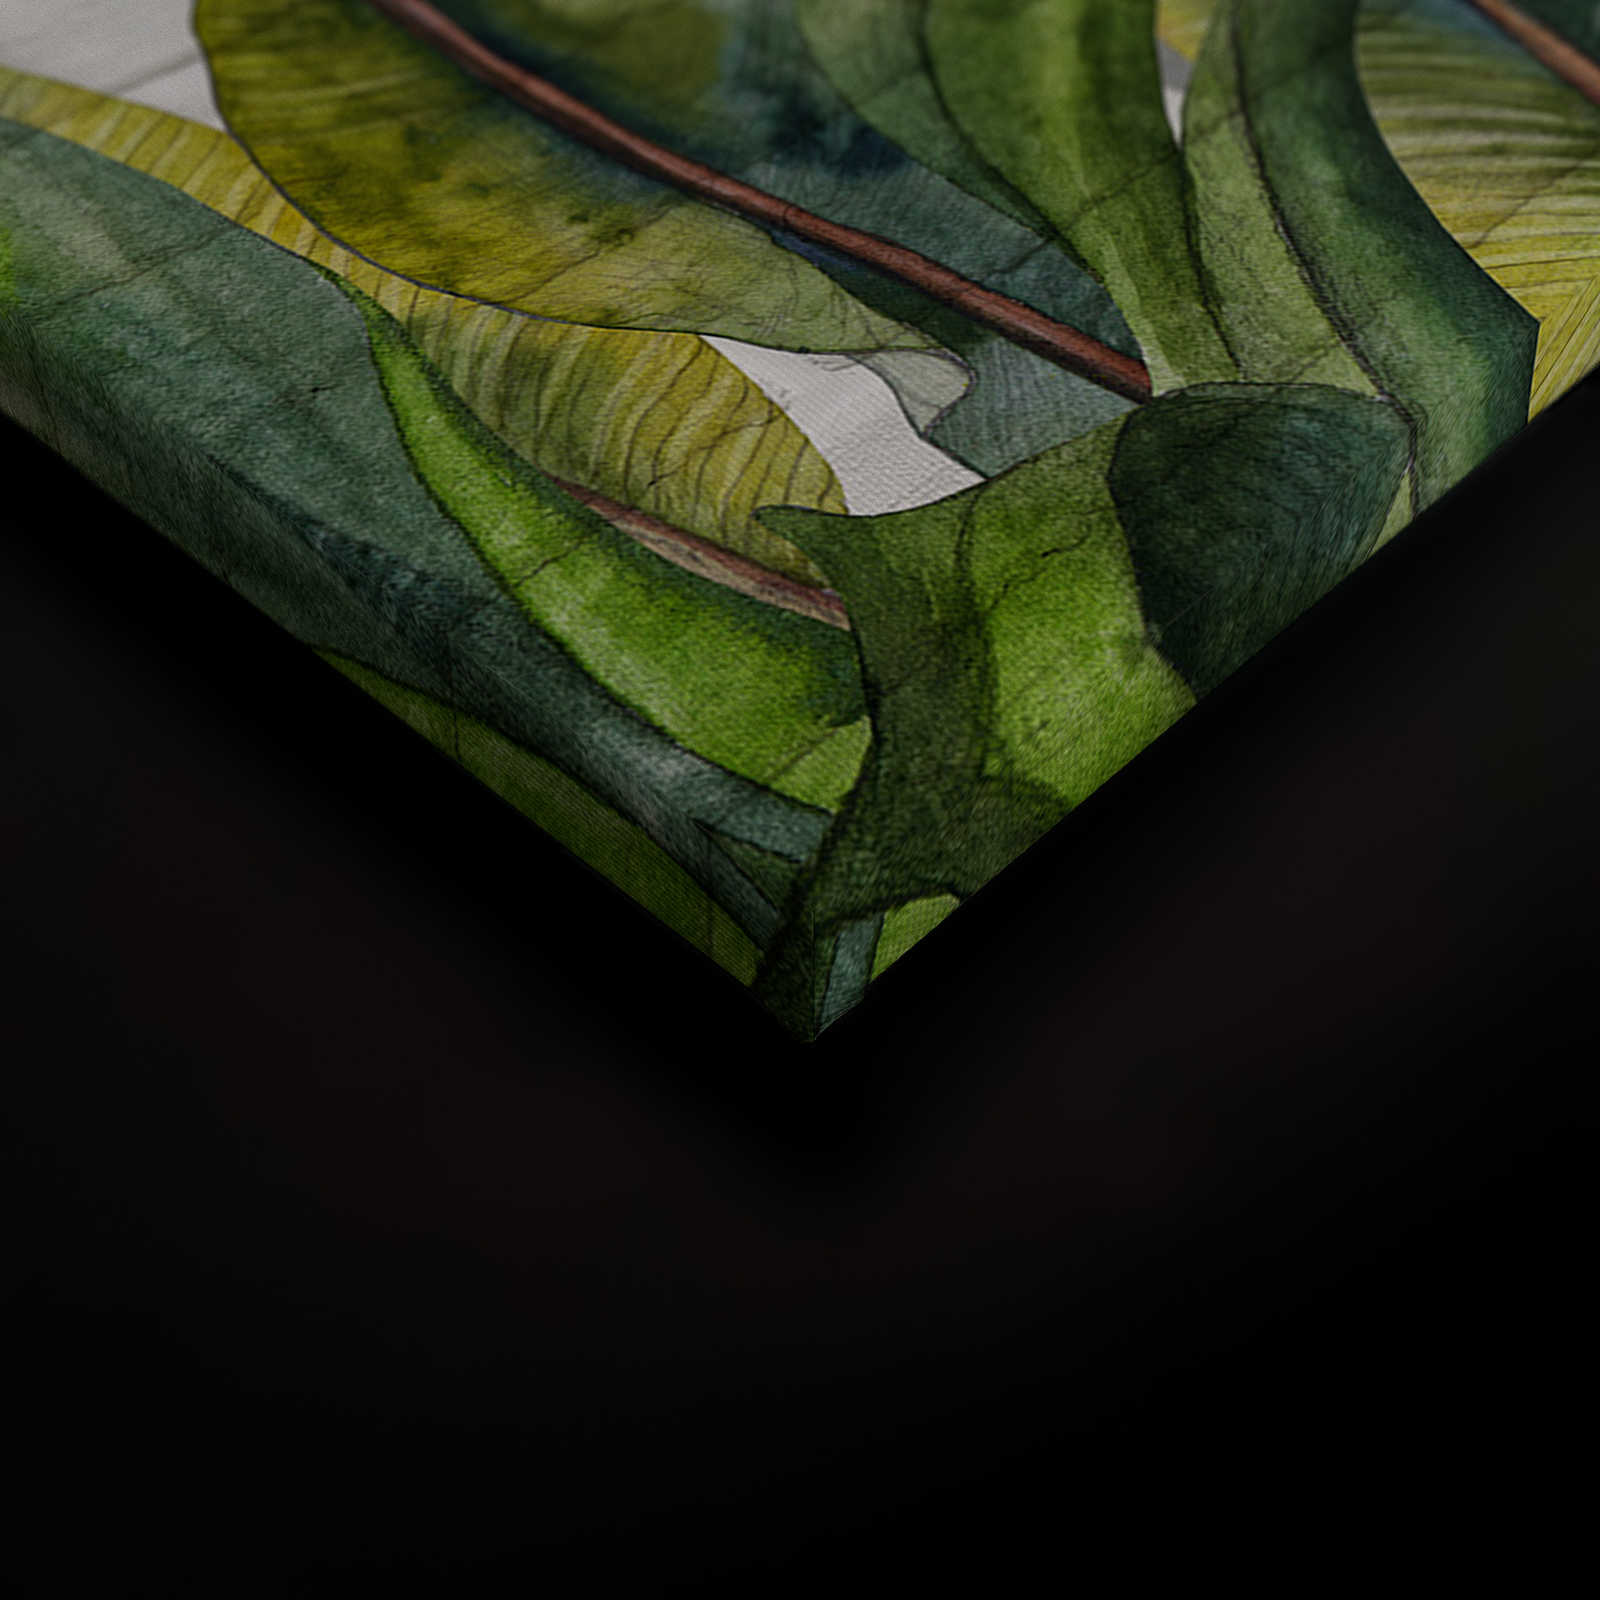             Quadro su tela con foglie davanti a una parete di mattoni bianchi - 0,90 m x 0,60 m
        